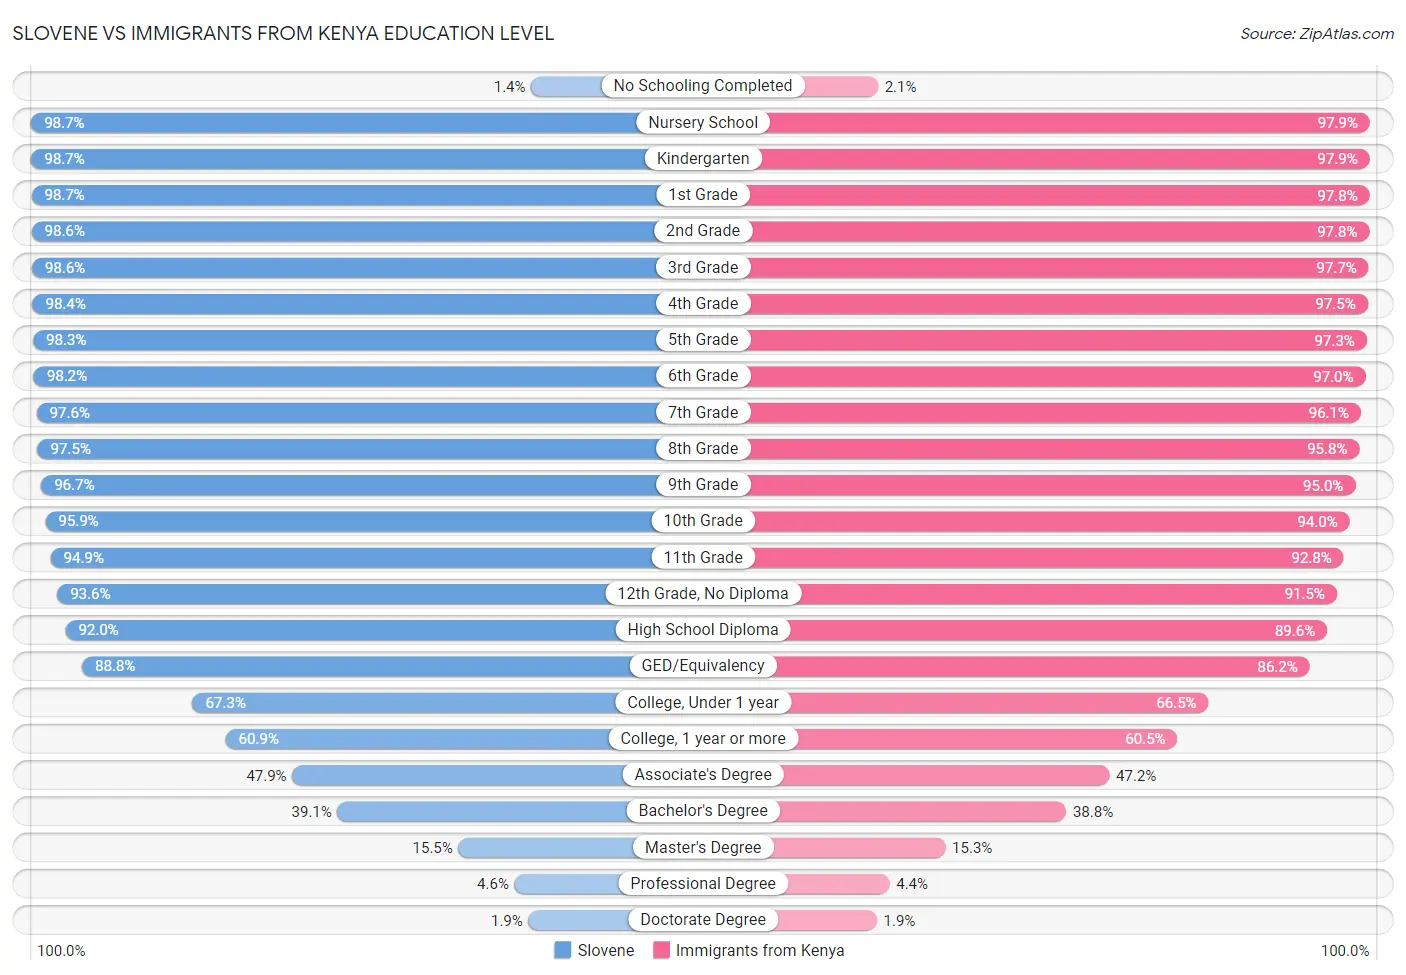 Slovene vs Immigrants from Kenya Education Level